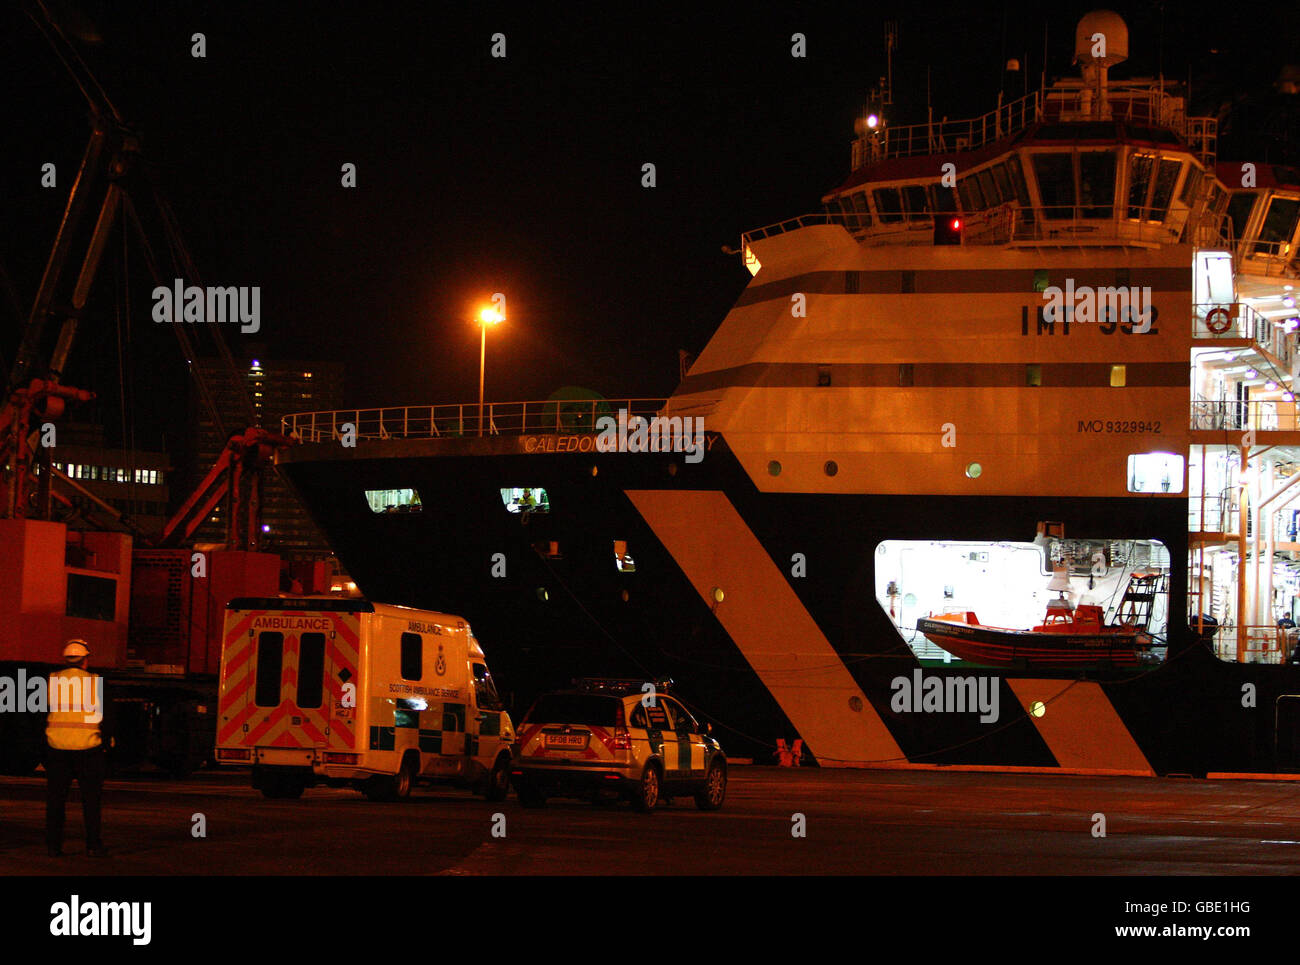 L'elicottero si schianta nel Mare del Nord. L'equipaggio da un elicottero che si è accampato vicino a una piattaforma del Mare del Nord arriva al porto di Aberdeen questa mattina. Foto Stock